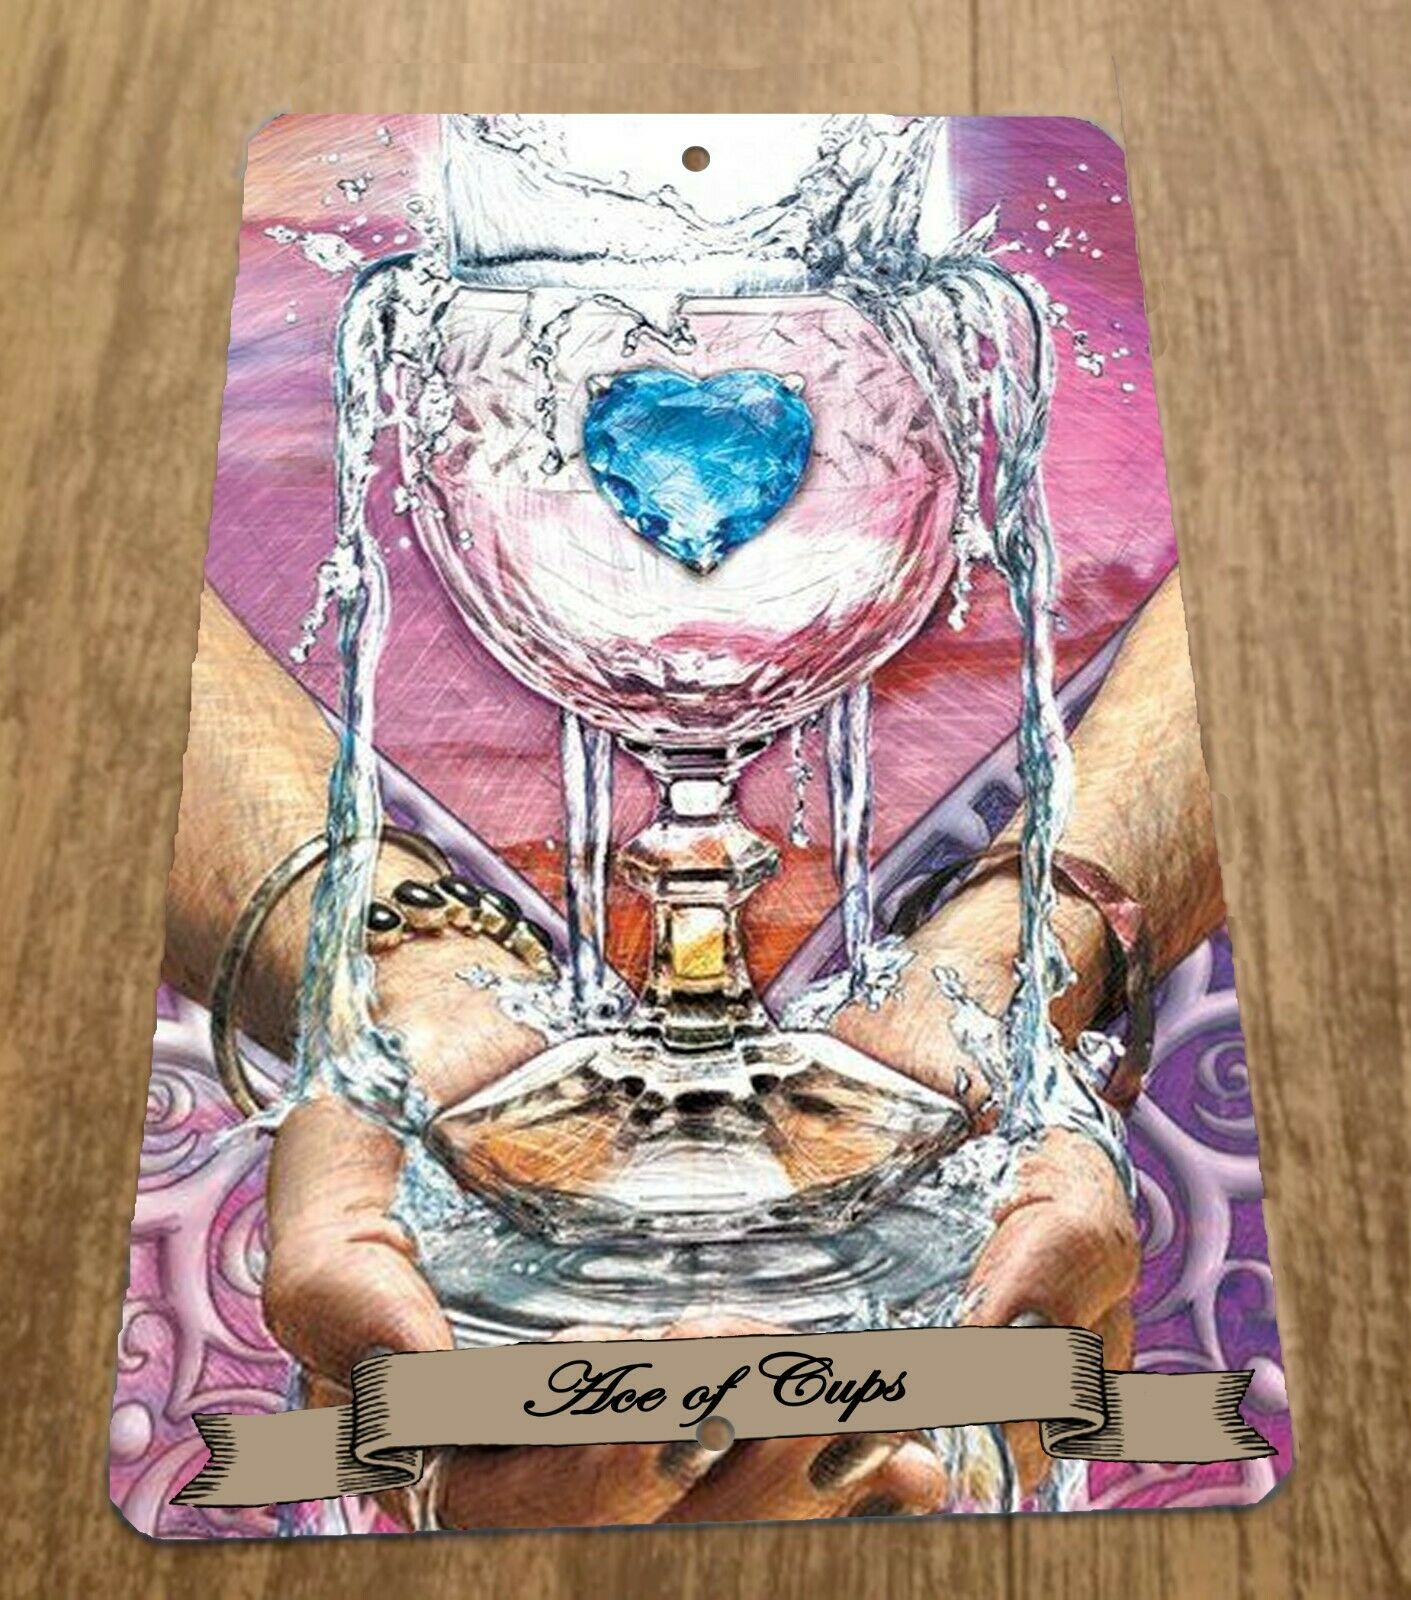 Ace of Cups Tarot Card Artwork 8x12 Metal Wall Sign Spiritual